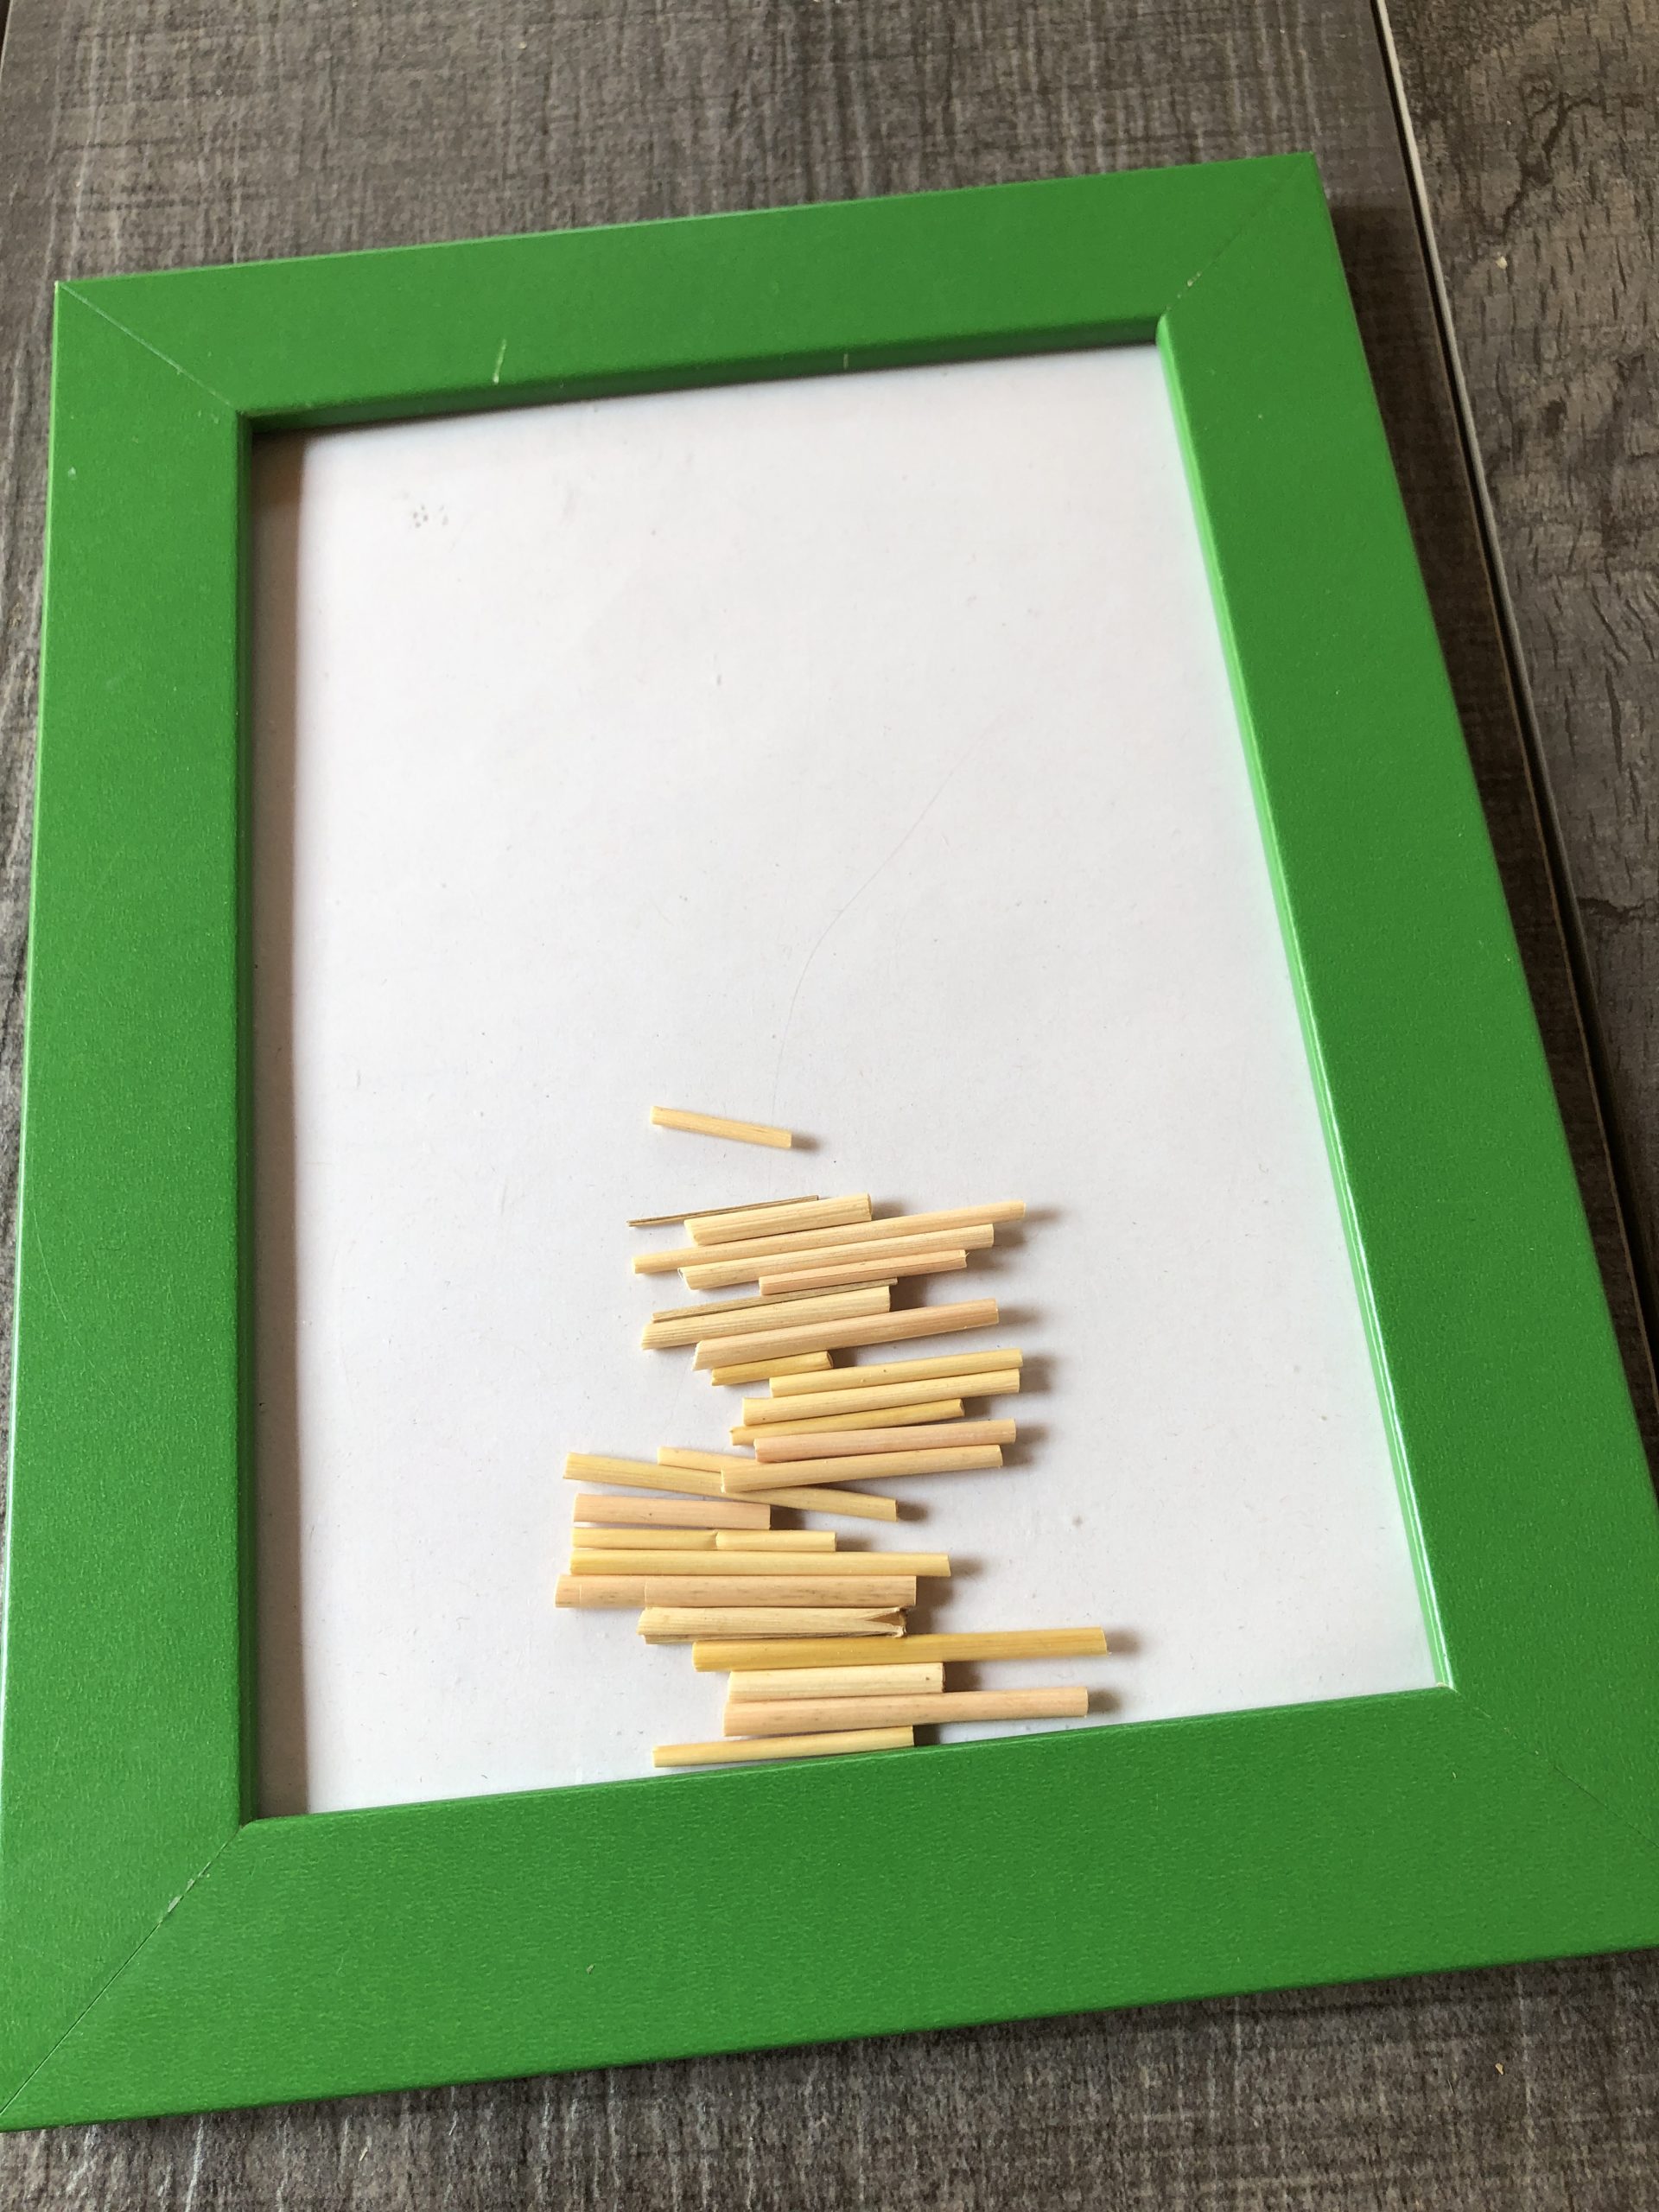 Bild zum Schritt 3 für das Bastel- und DIY-Abenteuer für Kinder: 'Sammelt die geschnittenen Strohhalmstücke am Besten auf dem Bilderrahmen.'